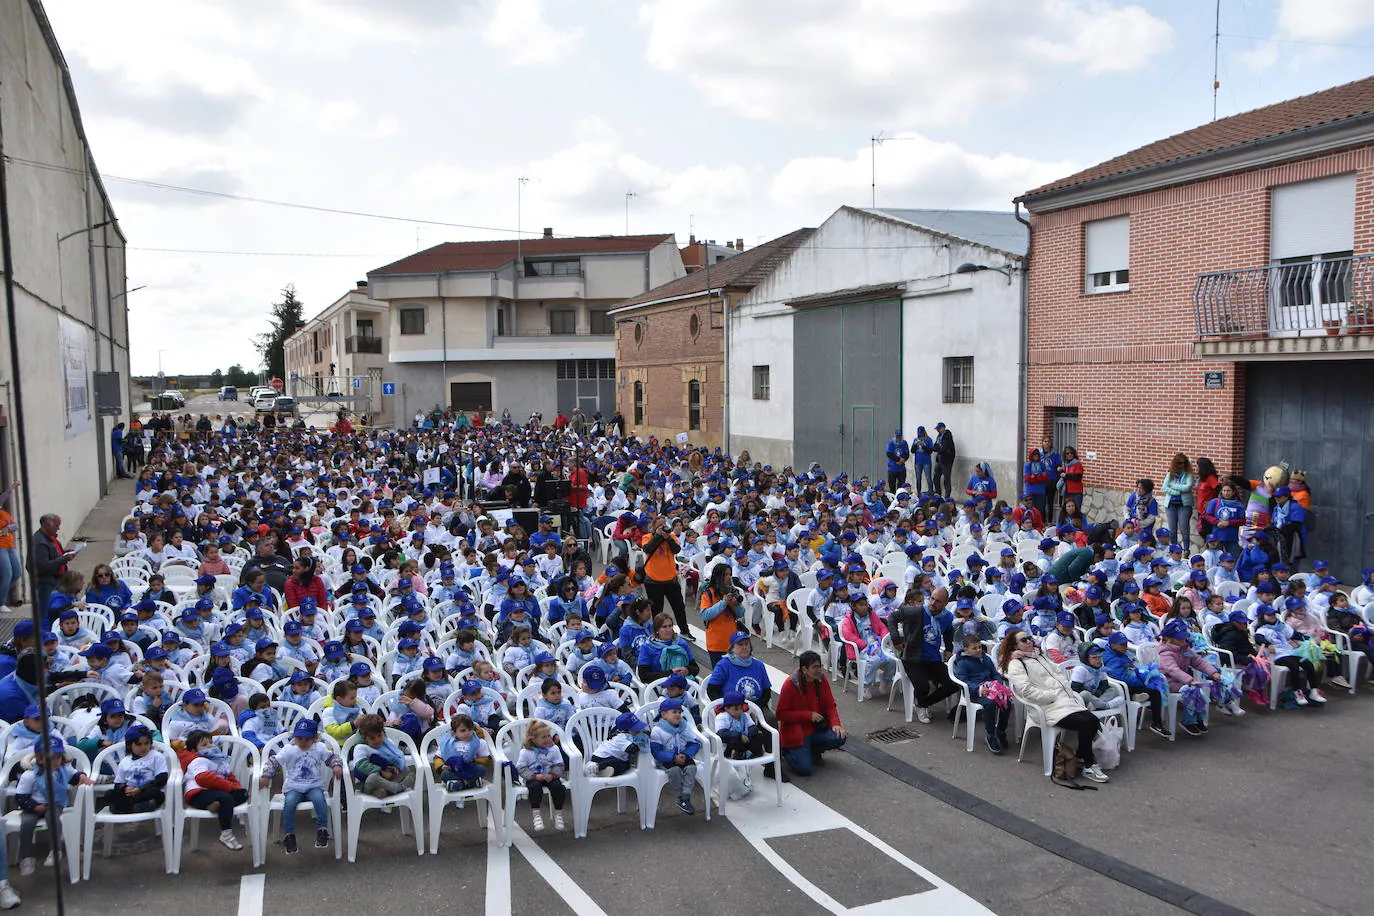 Más de 1.200 niños bailan al son de “El Danzar de los Danzares” en Castellanos